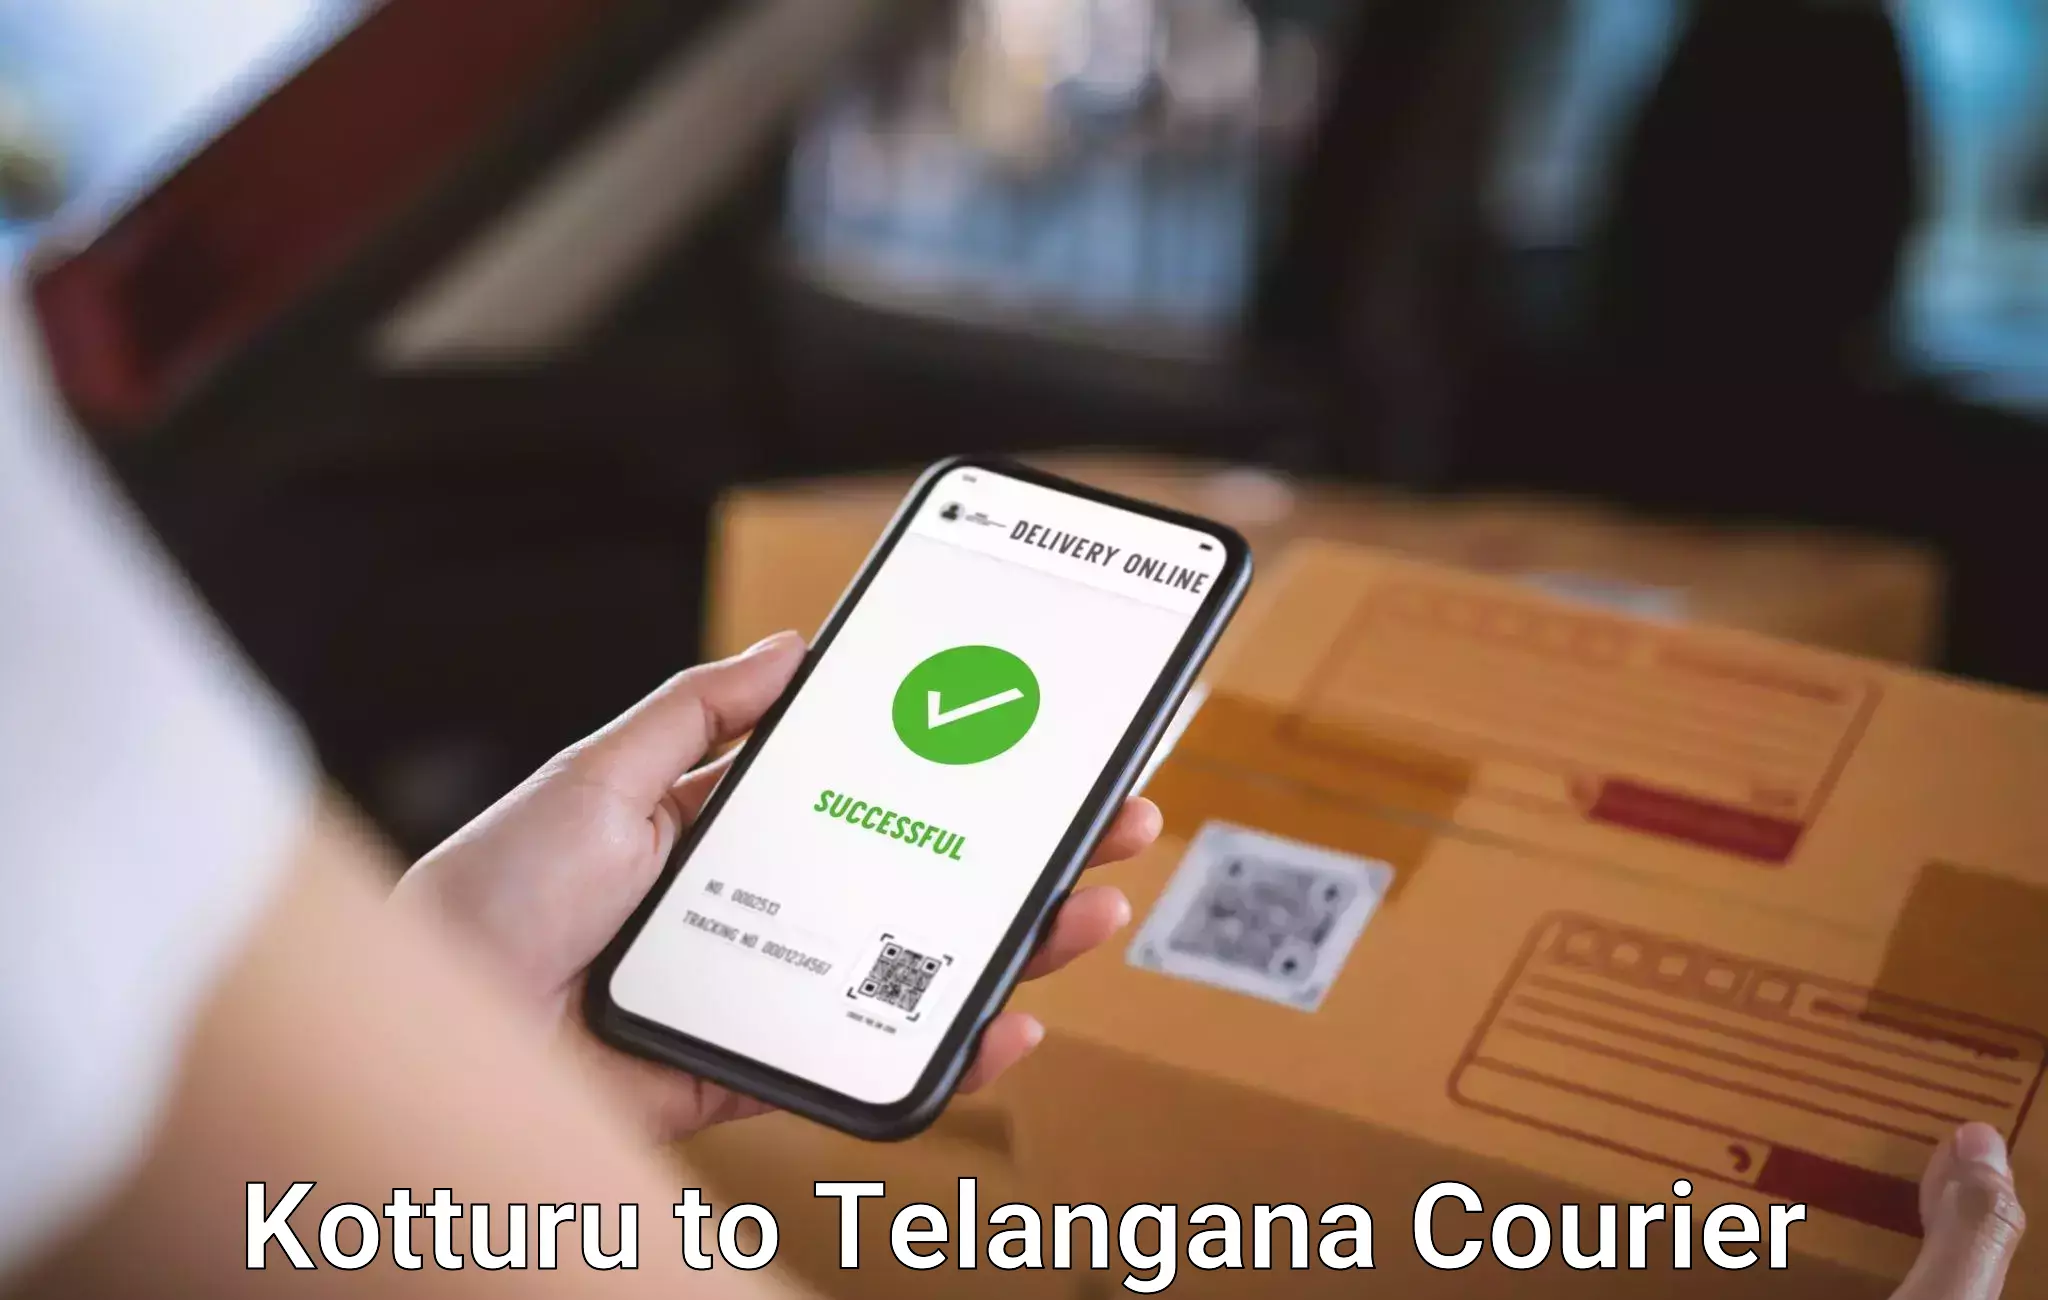 Luggage dispatch service Kotturu to Telangana